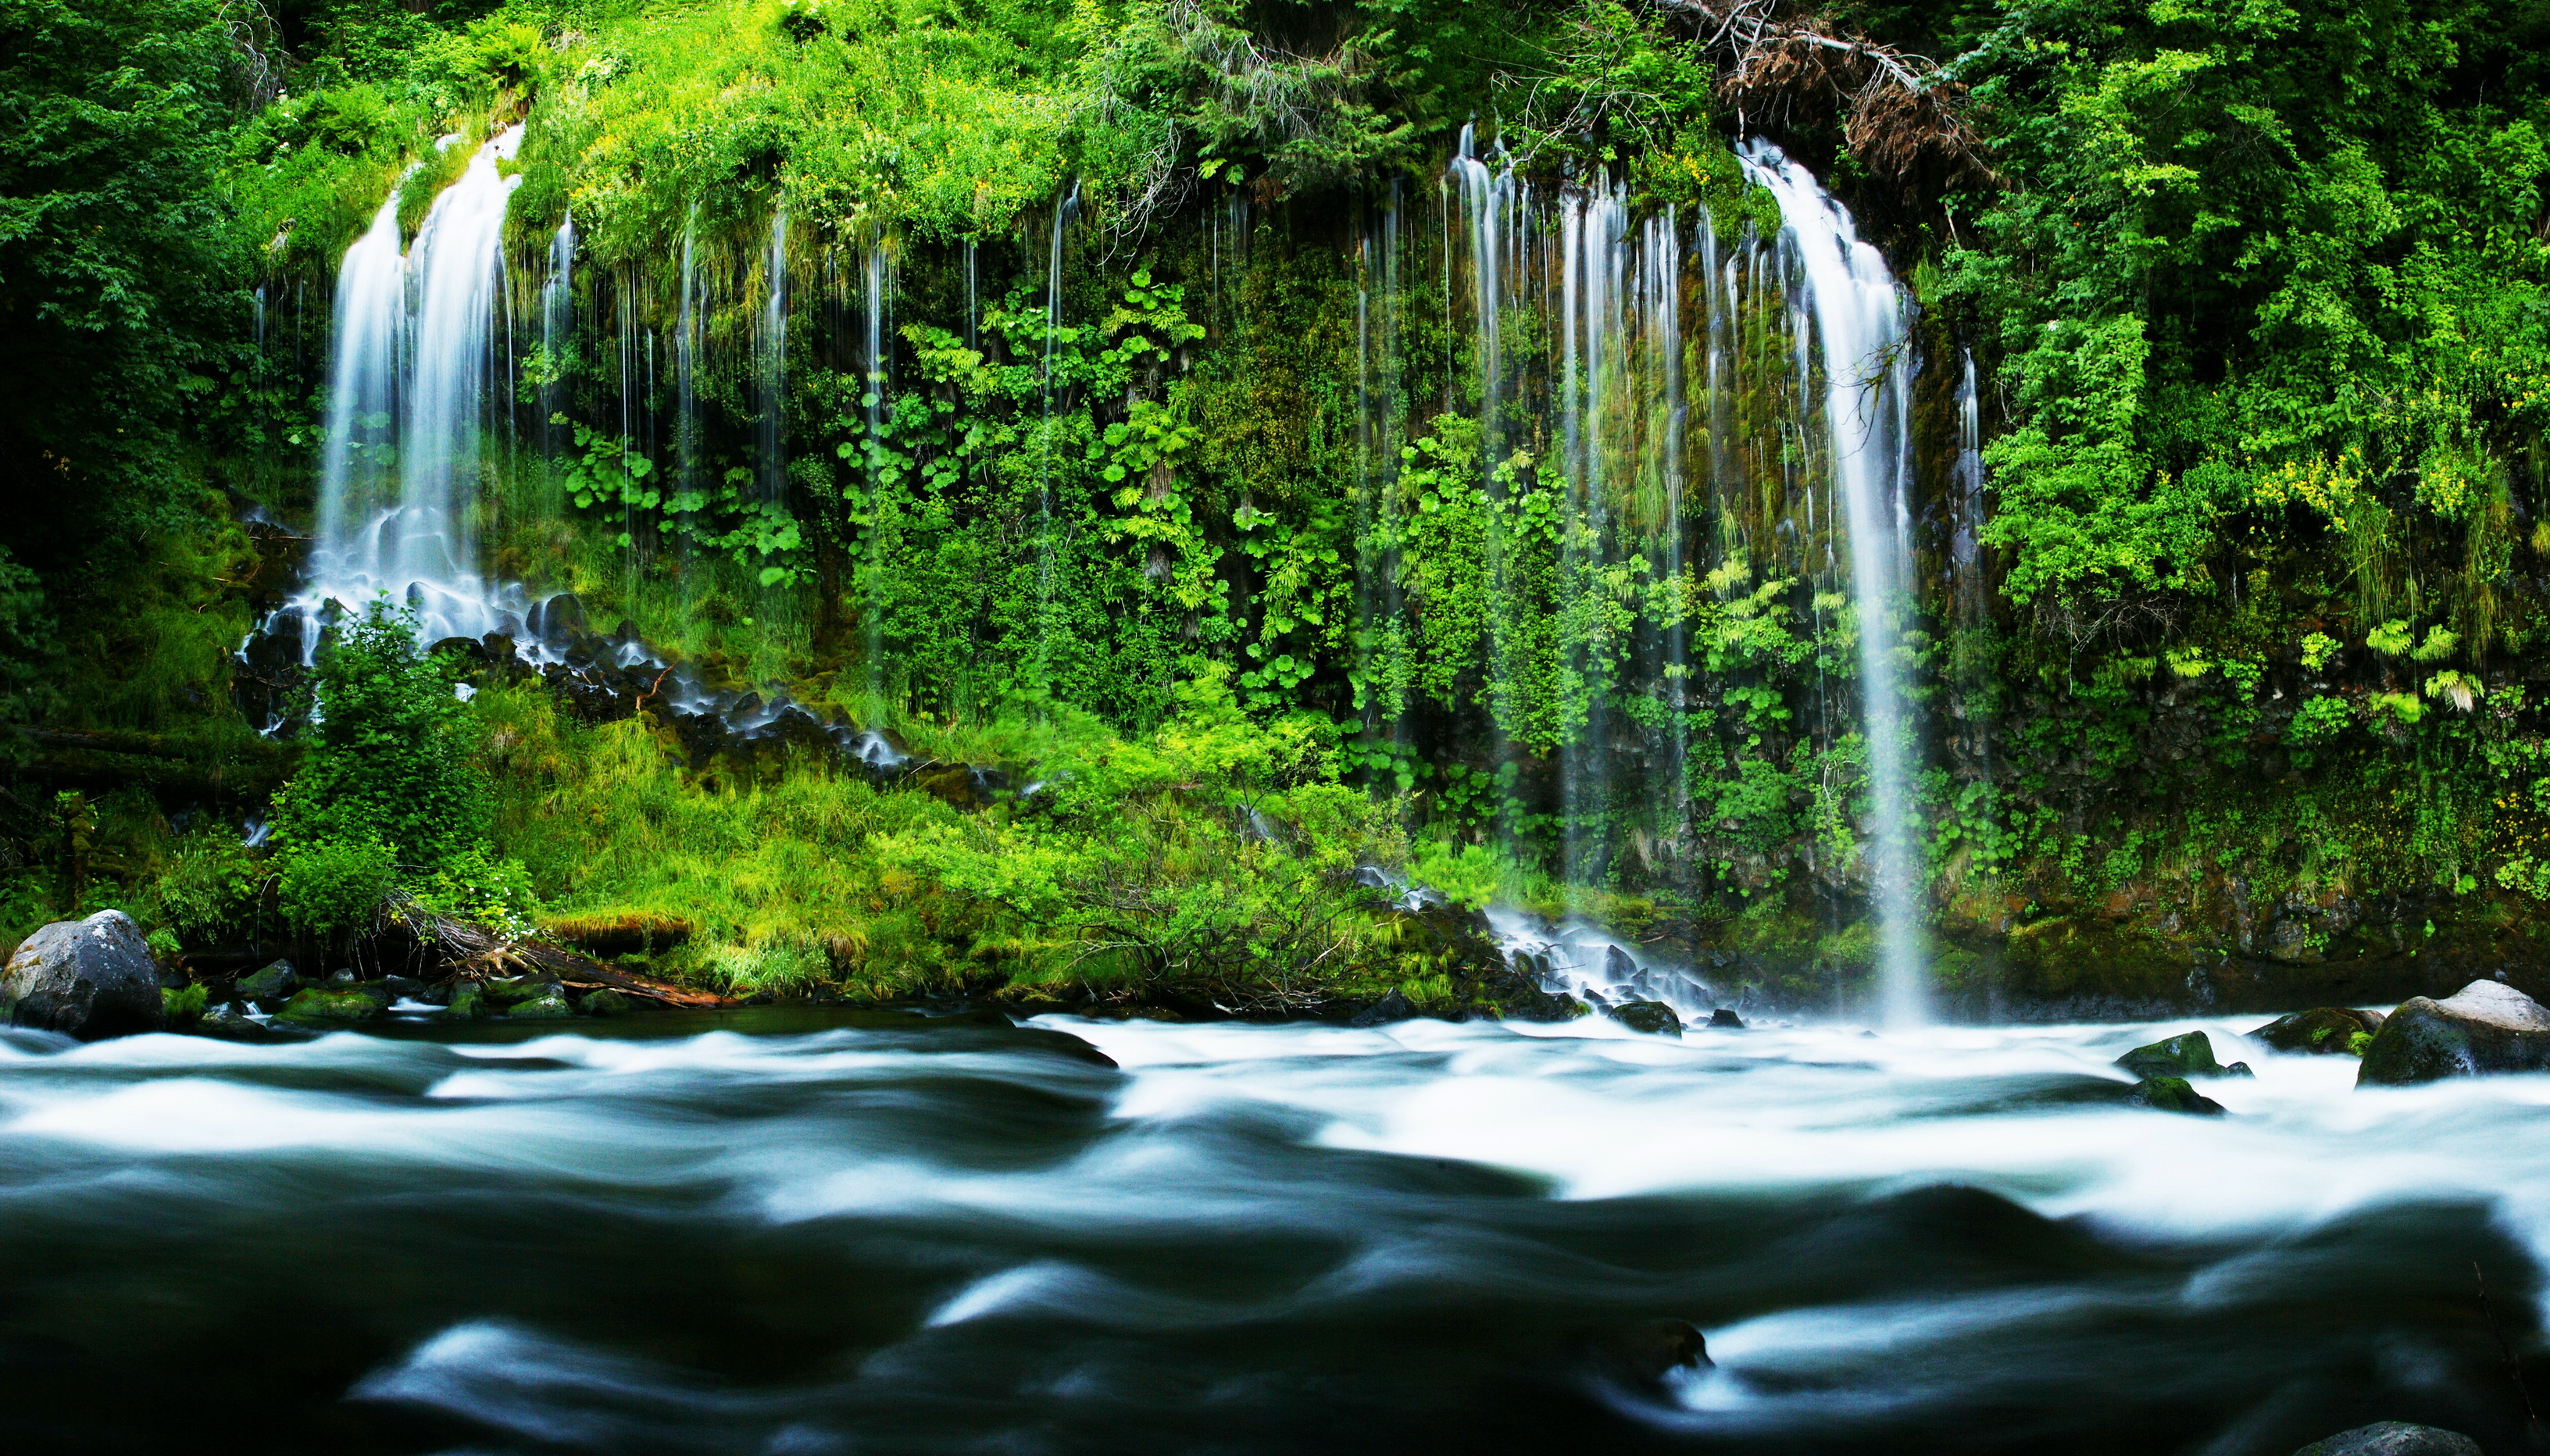 Обои на телефон живой водопад. Водопад Мосбрей, США. Водопад Мосбрей США фото. Природа водопад.